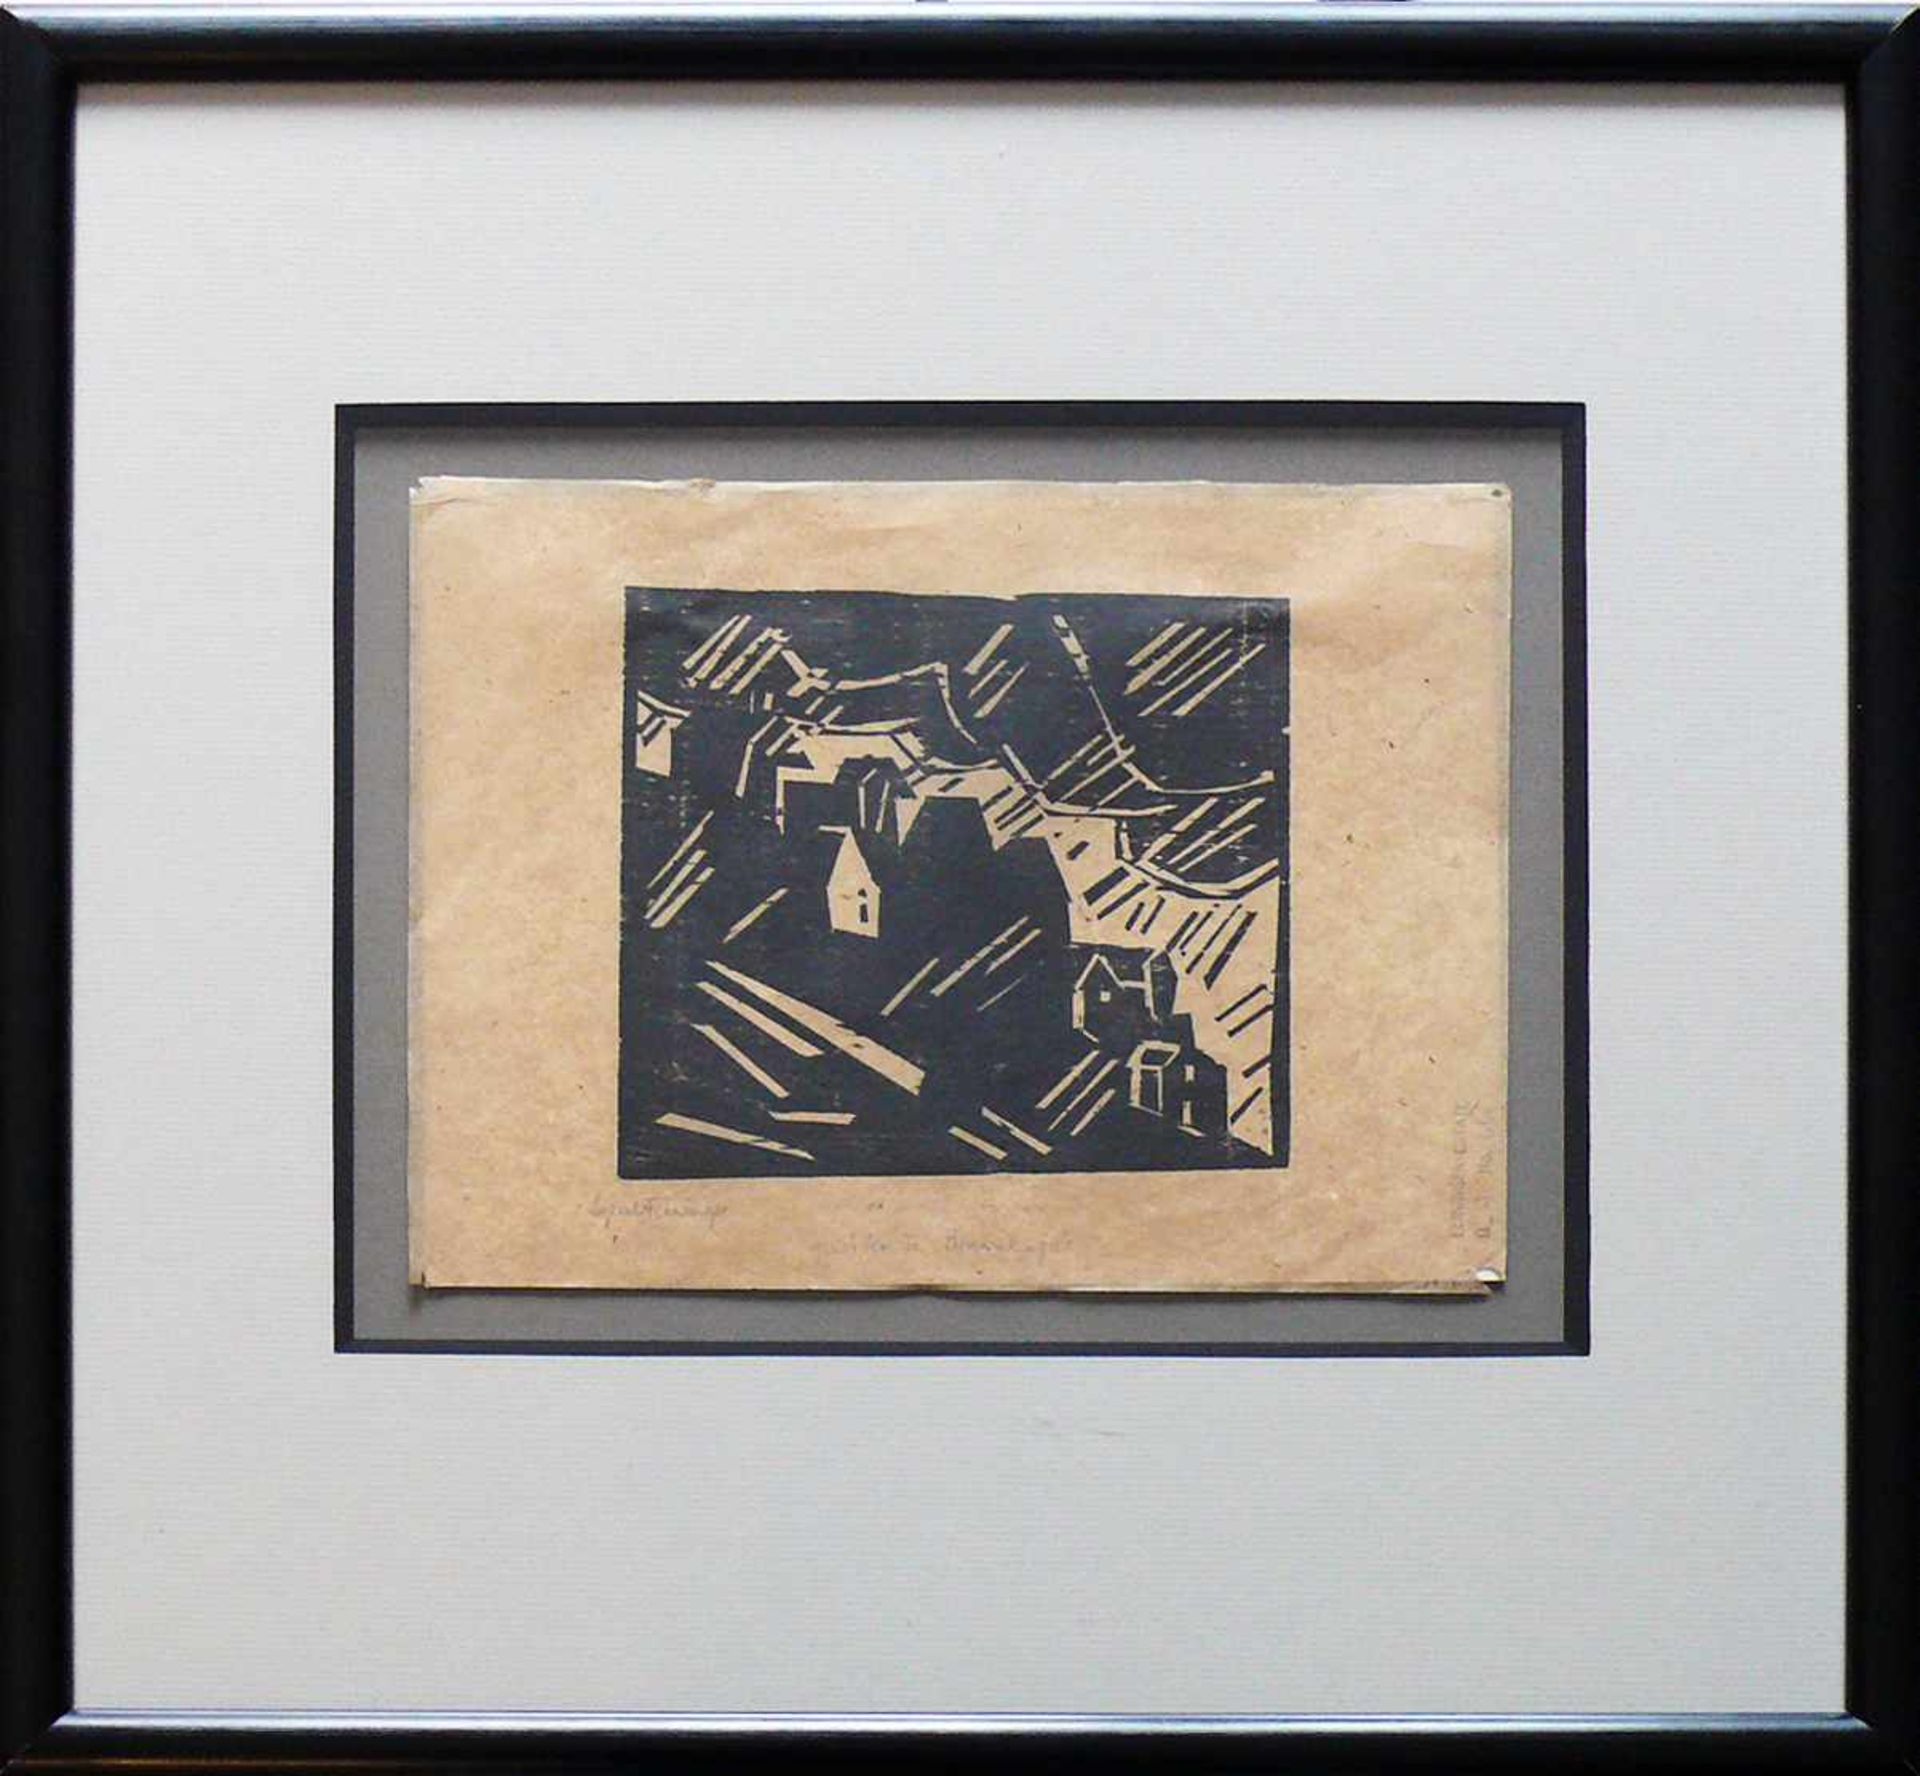 Feininger, Lyonel (New York 1871 - 1956) "Gewitterregen" (Thundershower); Holzschnitt 1918; sign.;